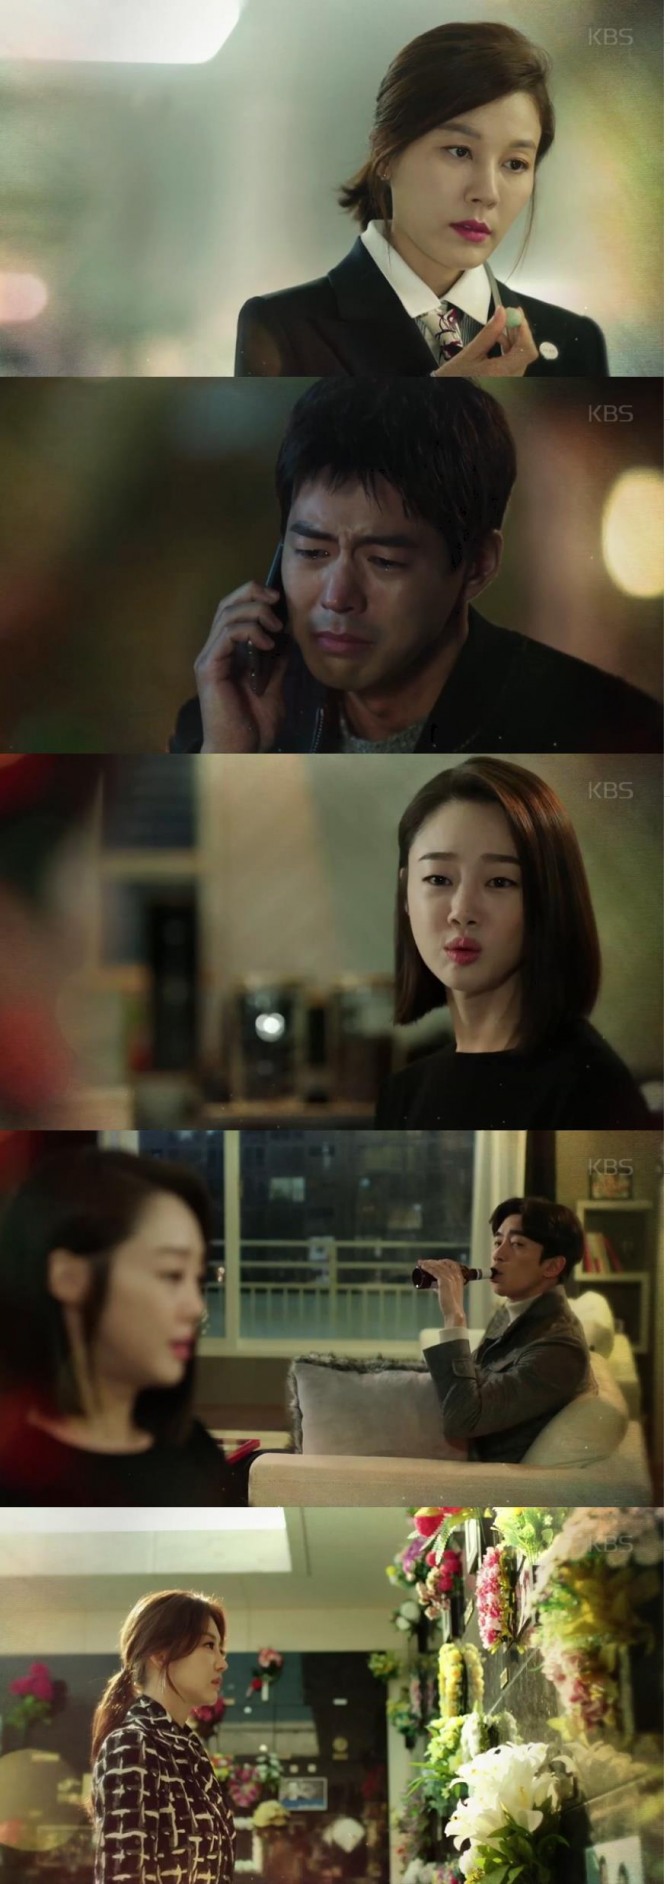 26일 밤 방송되는 KBS2 수목드라마 '공항가는 길' 11회에서 최수아(김하늘)는 다시 복직을 하고 서도우(이상윤)는 수아를 찾아 제주도를 헤매는 장면이 그려진다./사진=KBS2 영상 캡처